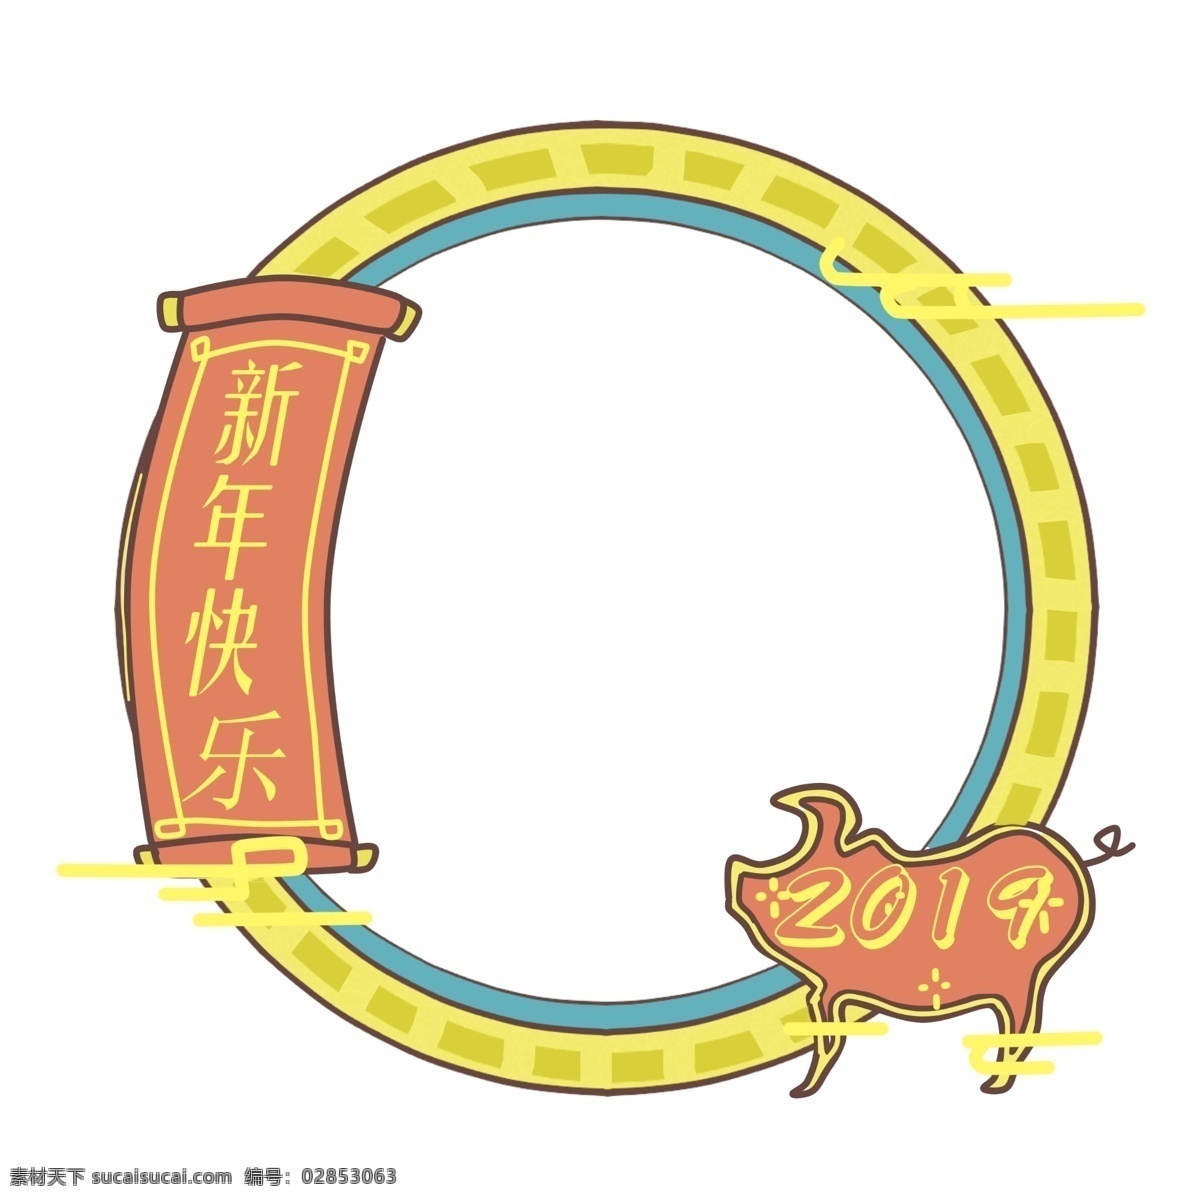 2019 新年 金 猪 边框 圆形 新年快乐边框 手绘 新年祥云边框